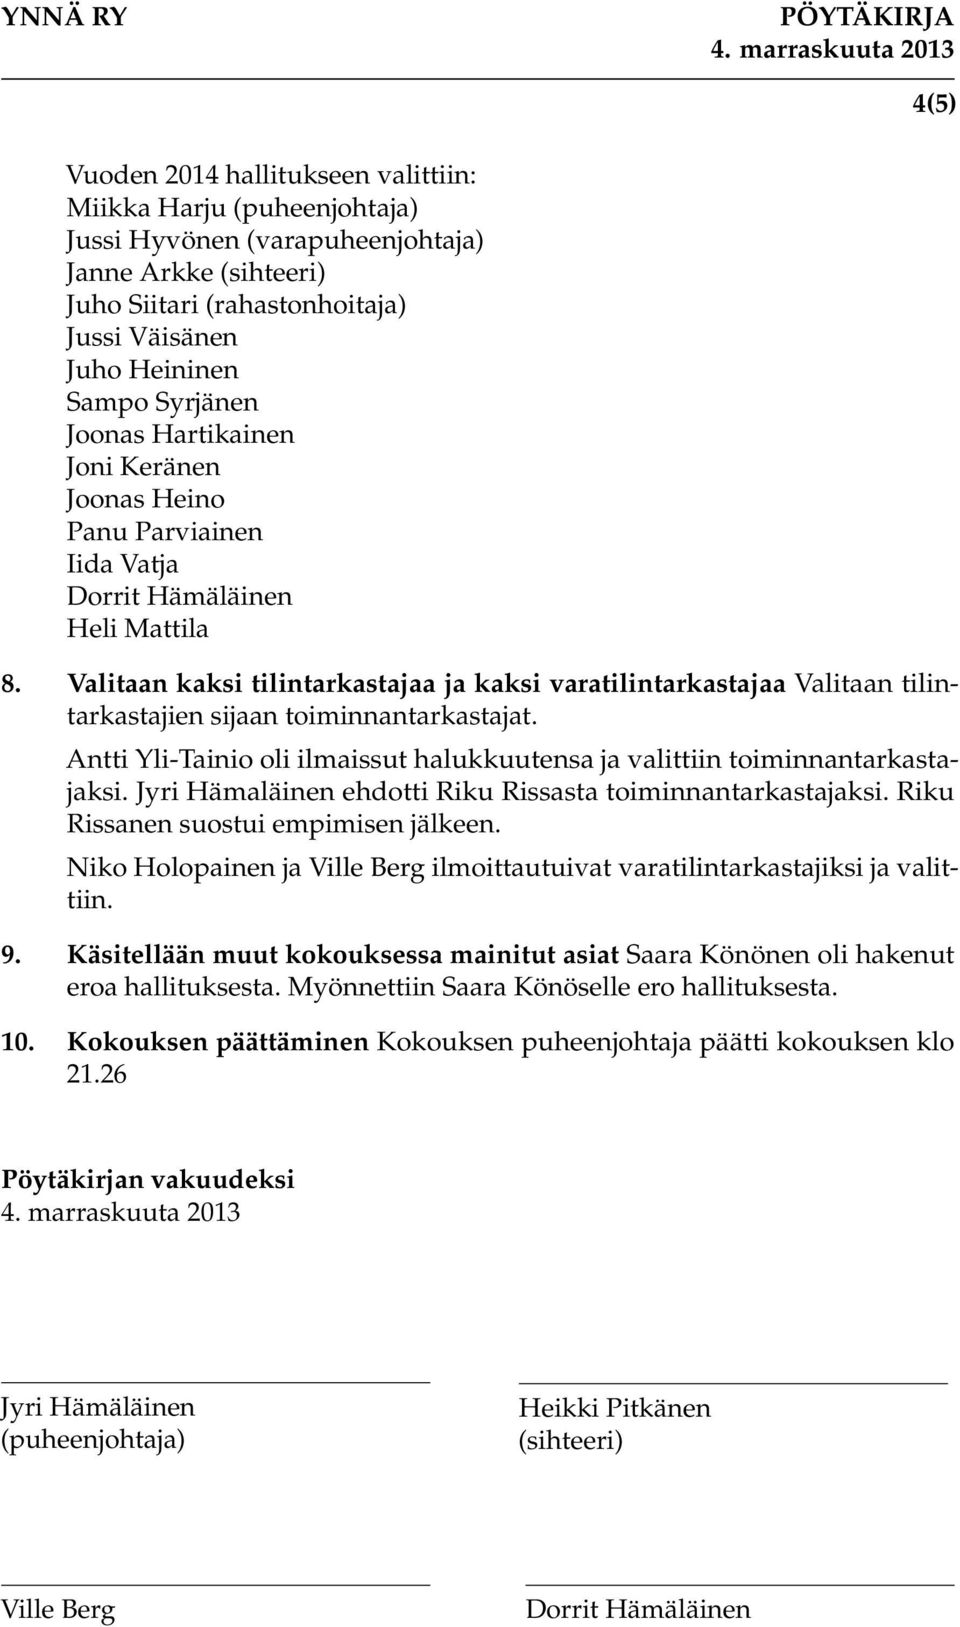 Valitaan kaksi tilintarkastajaa ja kaksi varatilintarkastajaa Valitaan tilintarkastajien sijaan toiminnantarkastajat. Antti Yli-Tainio oli ilmaissut halukkuutensa ja valittiin toiminnantarkastajaksi.